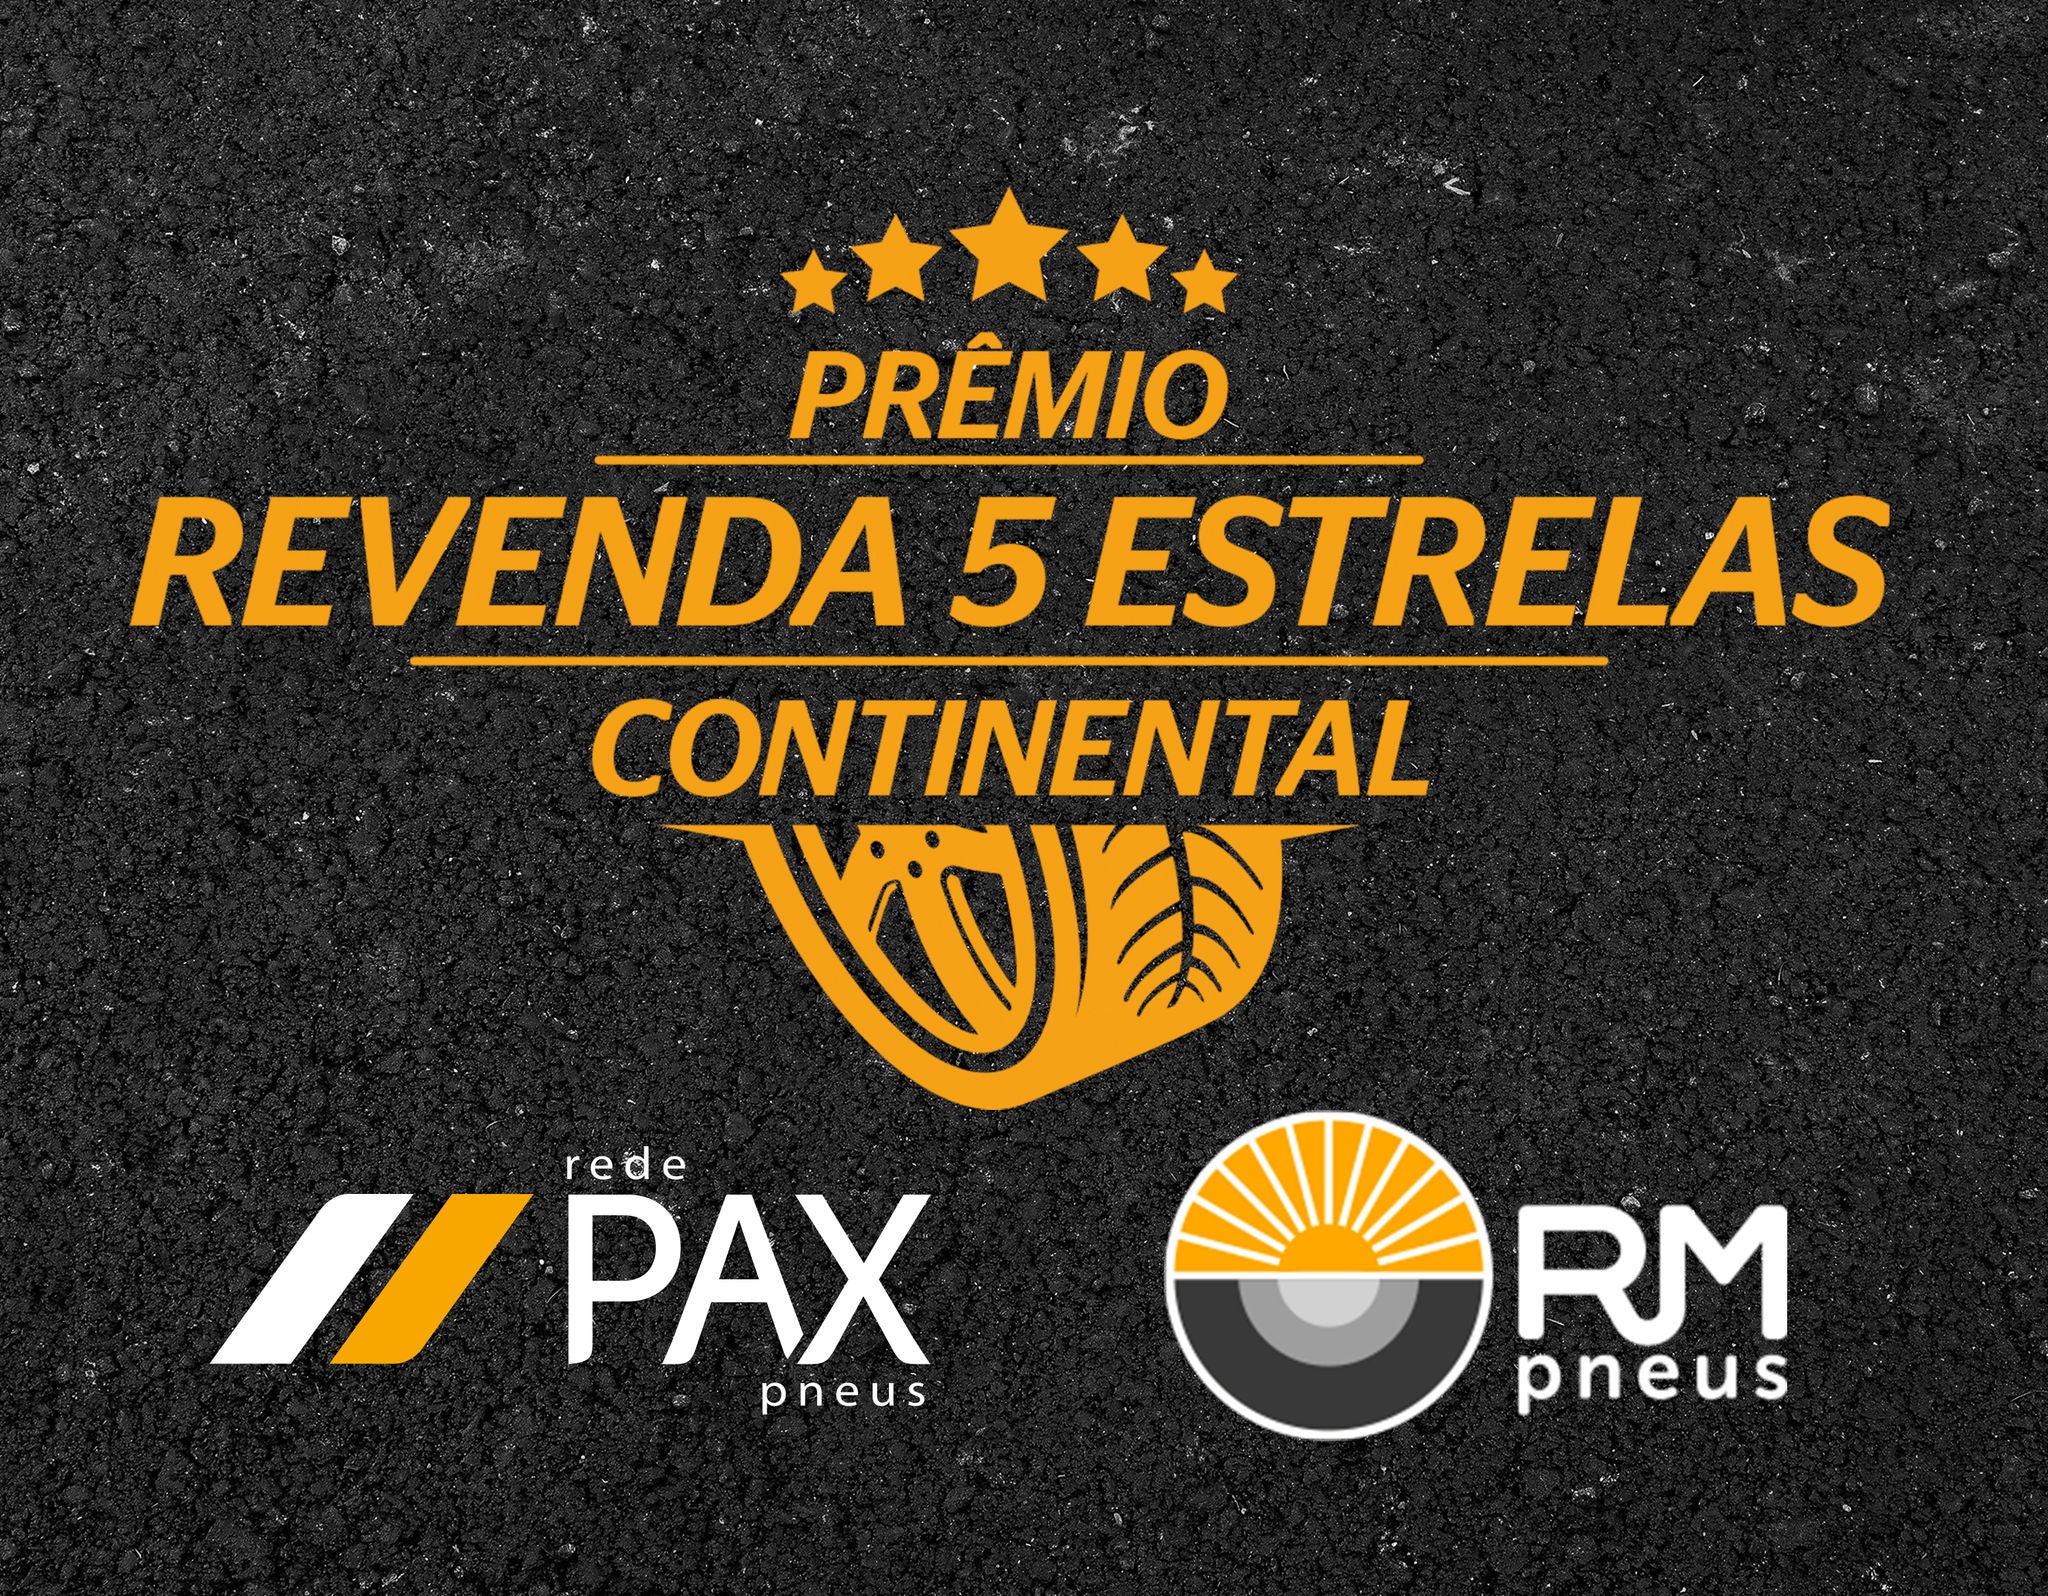 (logotipo da campanha Prêmio Revenda 5 Estrelas Continental + Logitpo Pax Pneus + Logotipo RM Pneus)